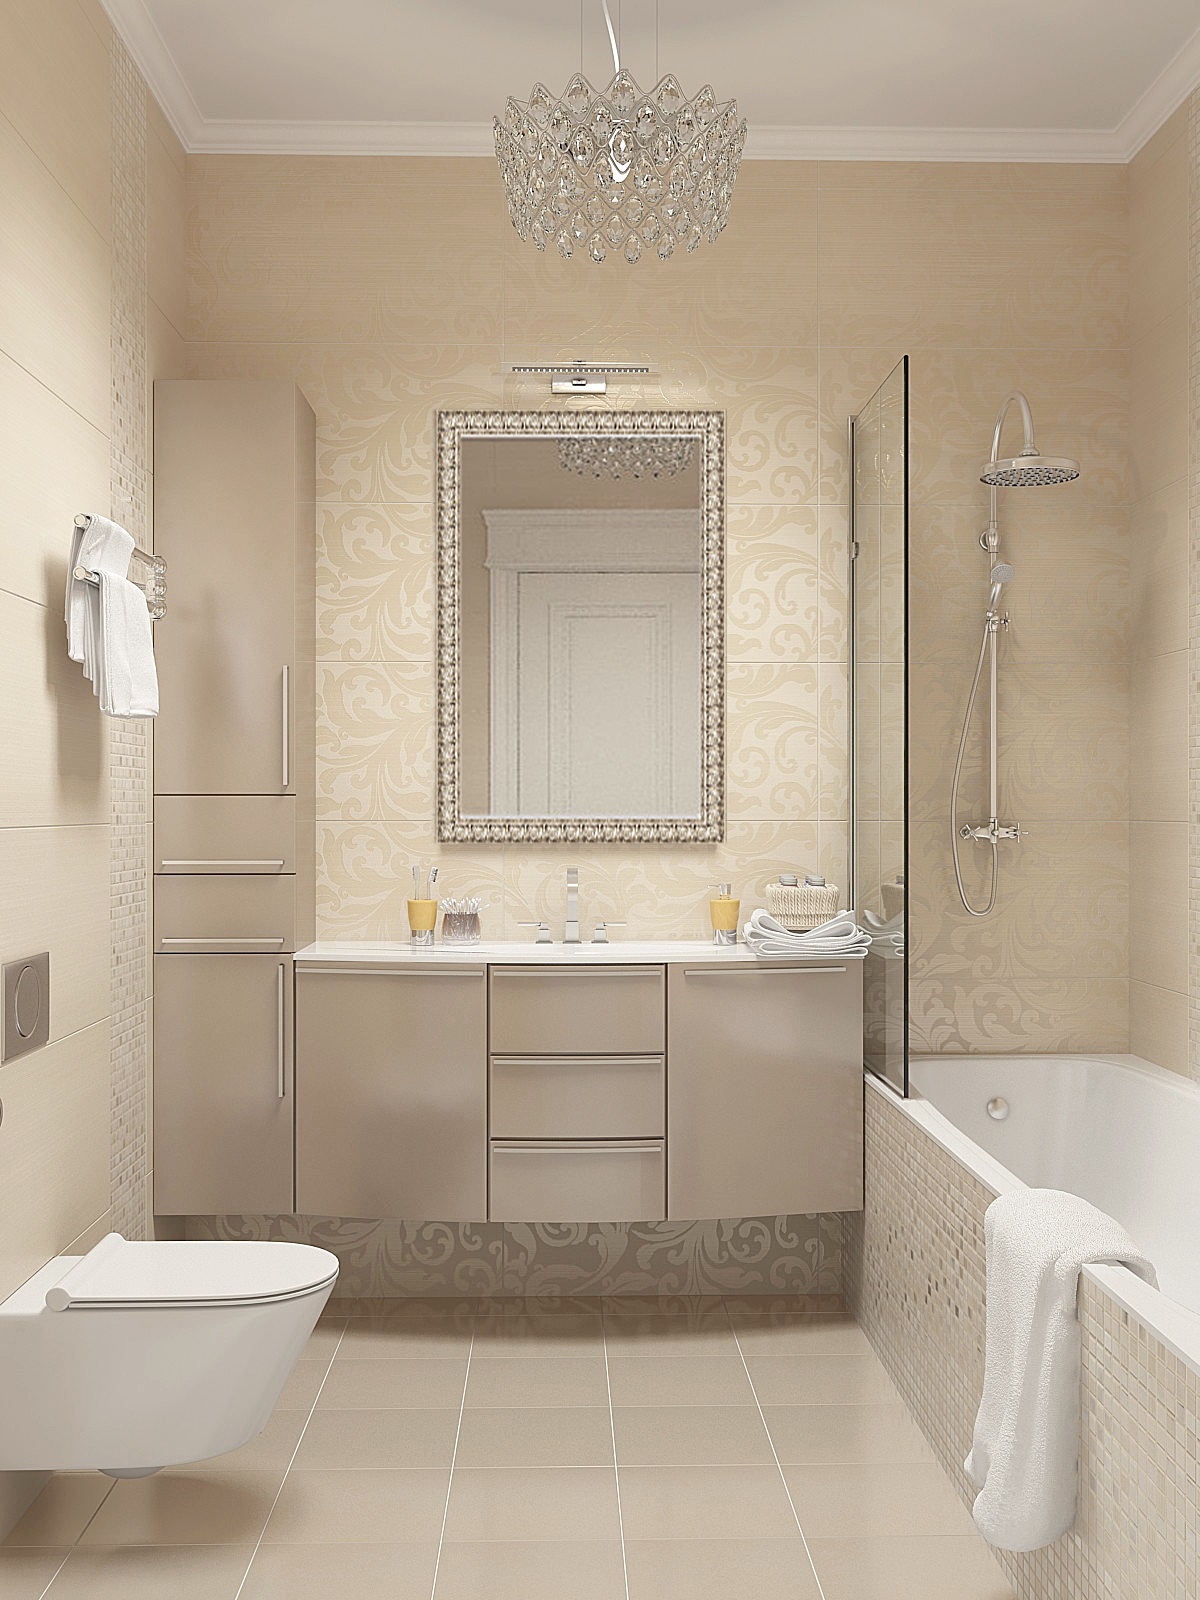 versione degli splendidi interni del bagno di colore beige